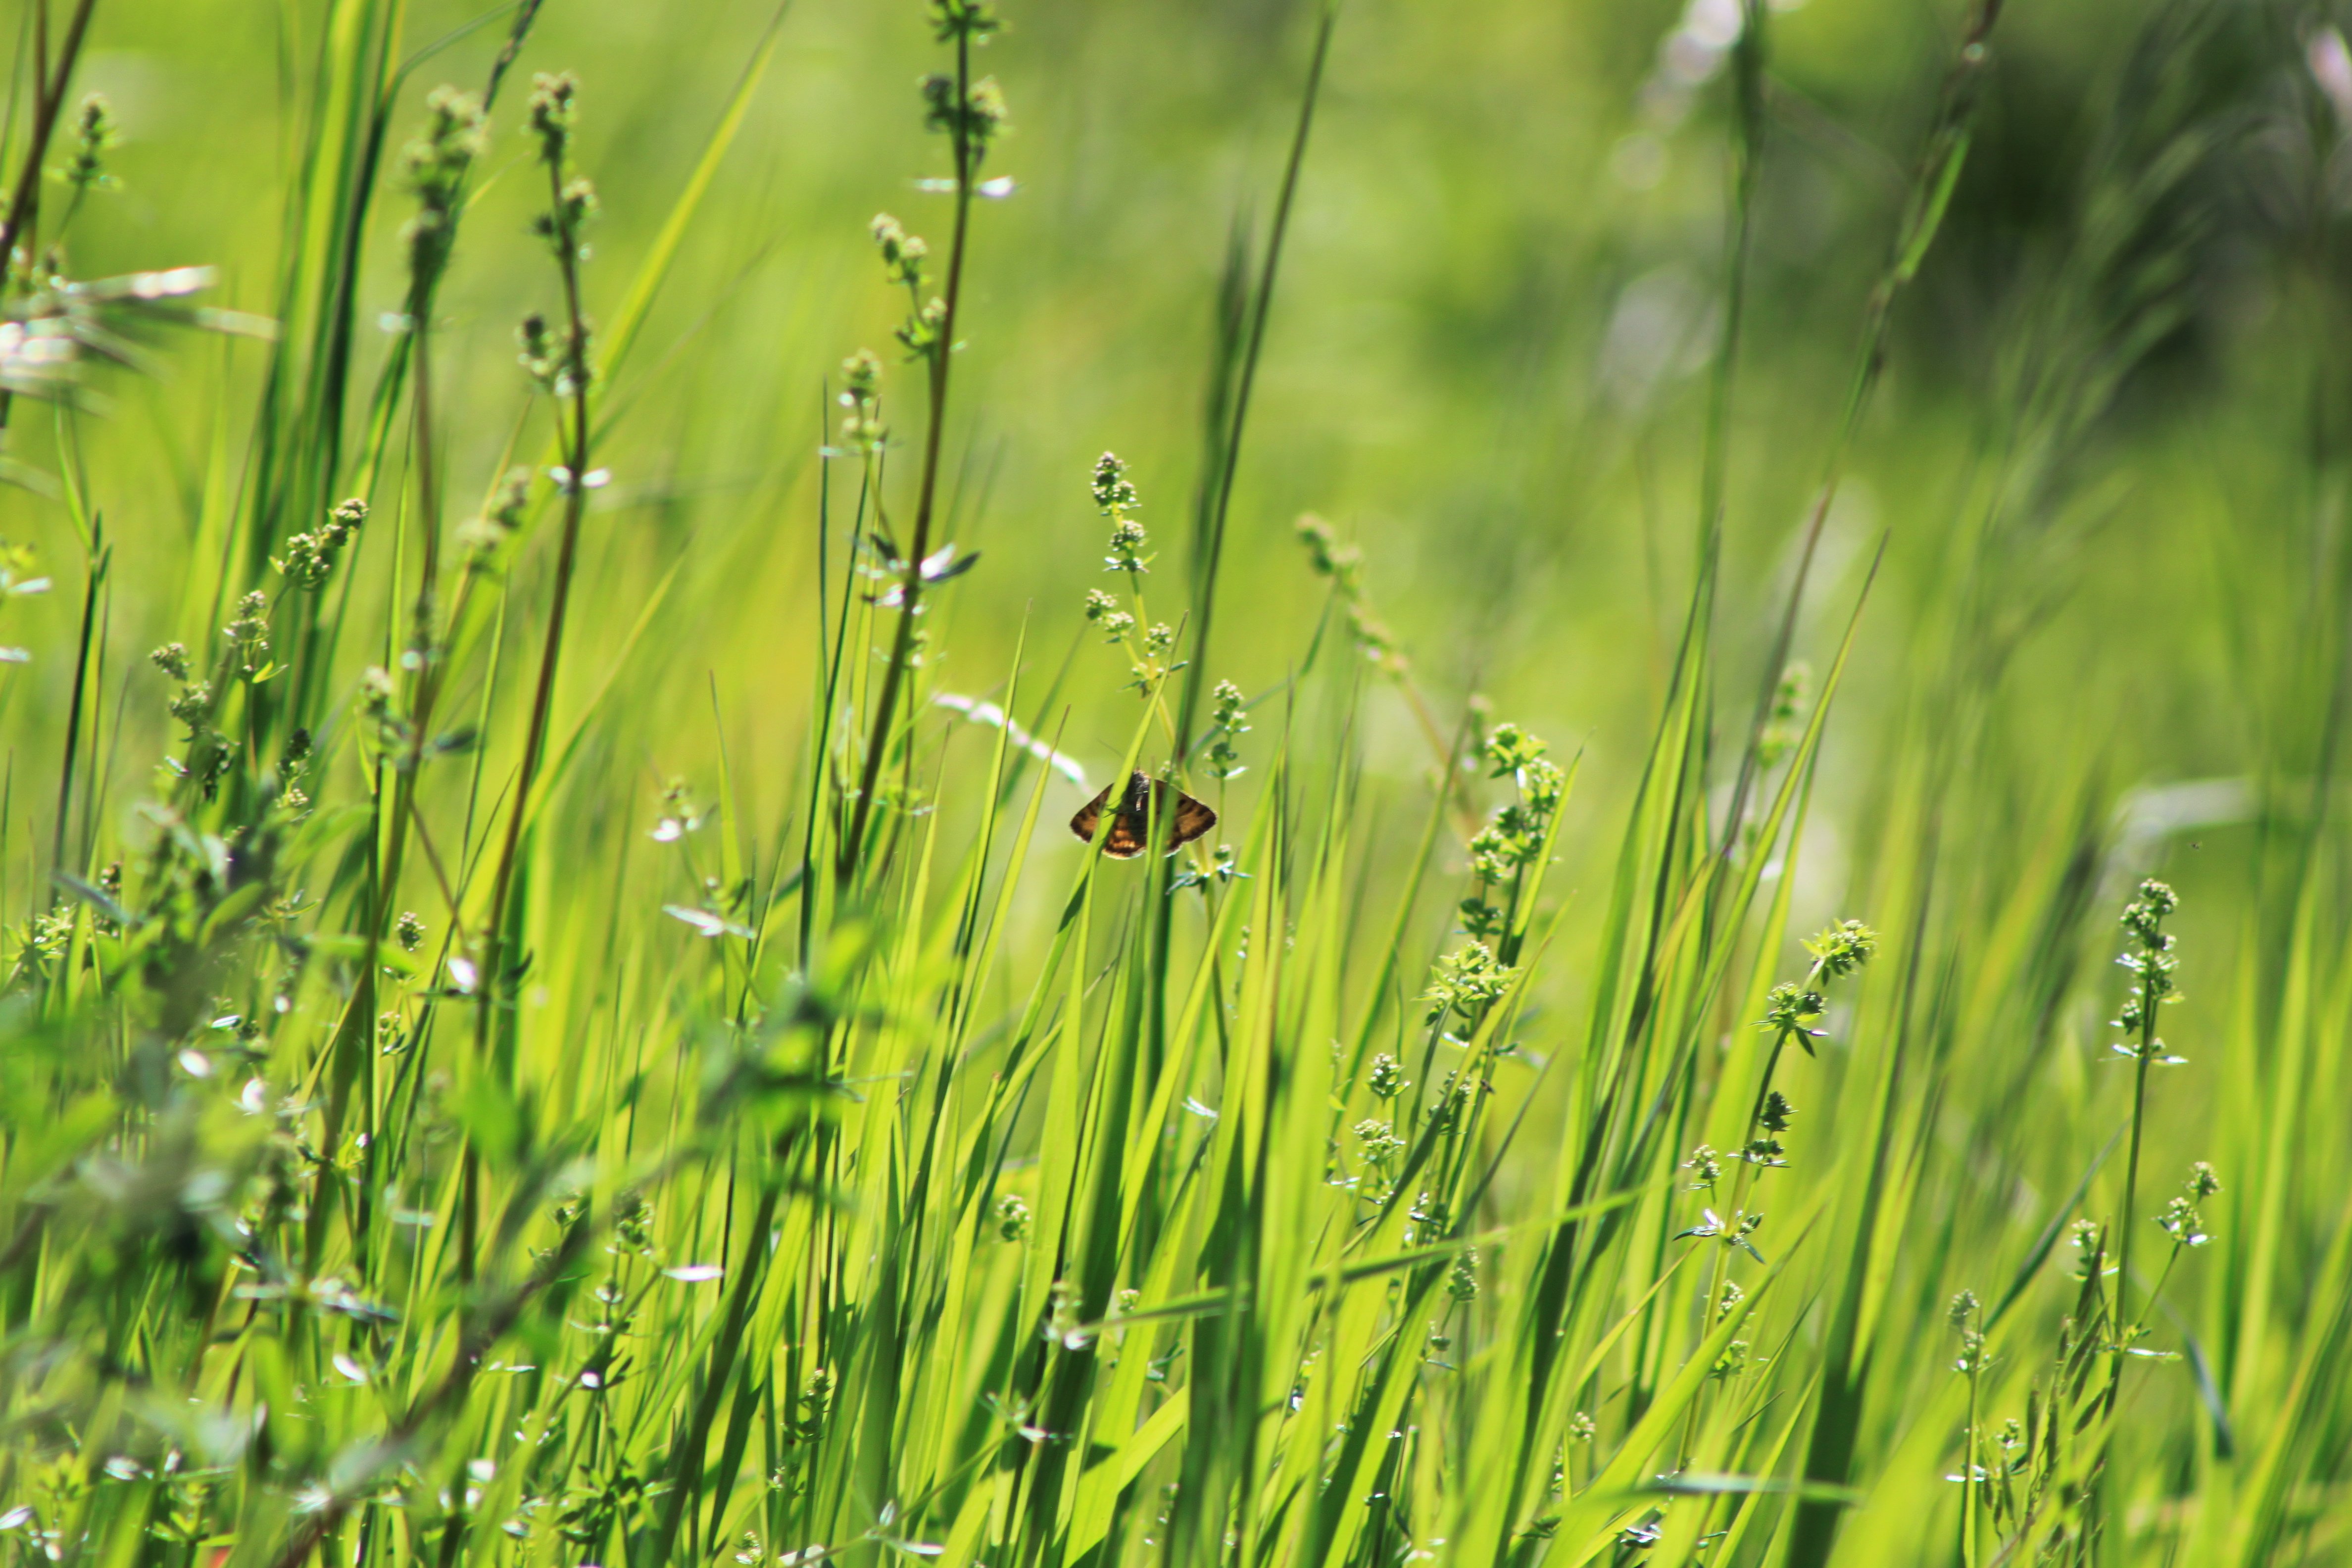 På ett grönt grässtrå sitter en liten fjäril. Det är sommar, soligt väder och frodig grönska på bilden. 